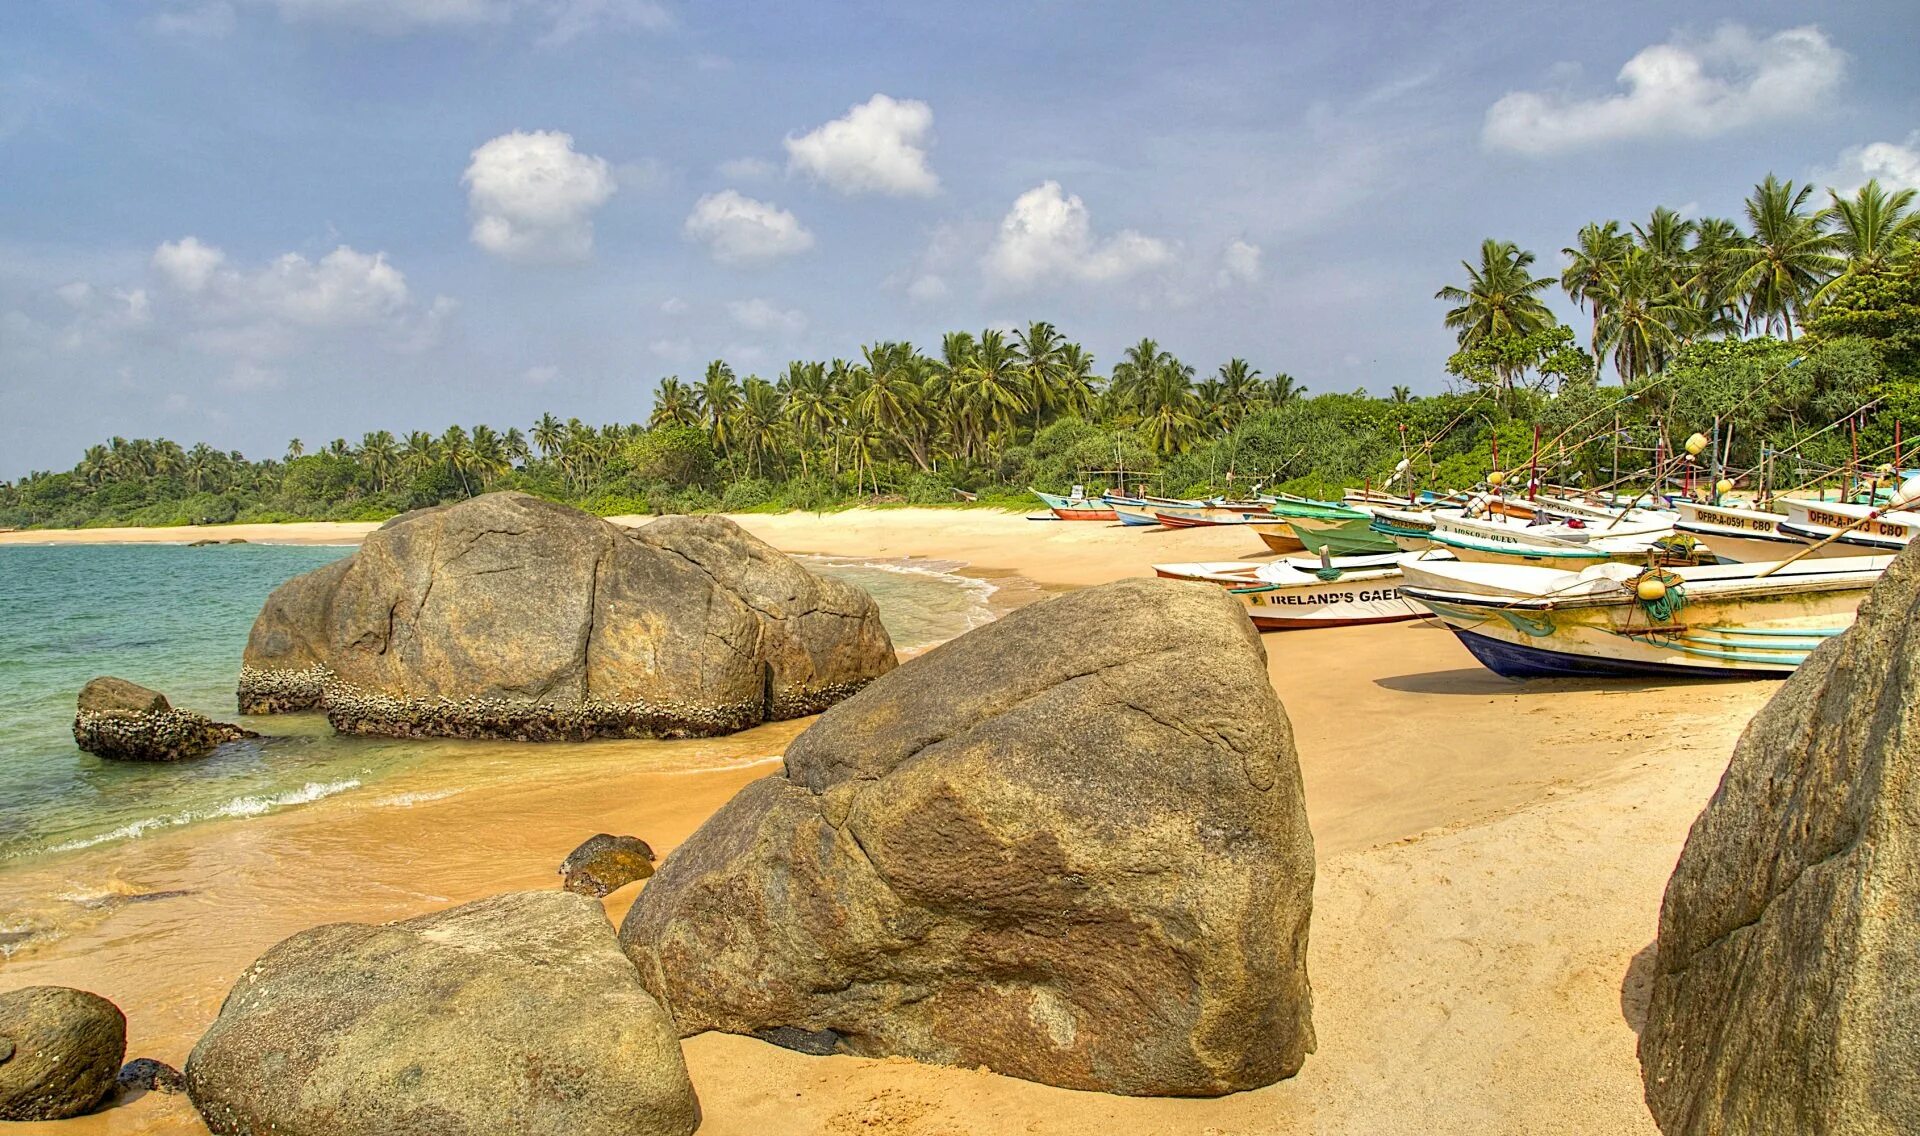 Какой океан находится в шри ланке. Берег острова Шри Ланка. Тринкомали Шри Ланка. Негомбо Шри Ланка. Шри Ланка Тринкомали пляж море.